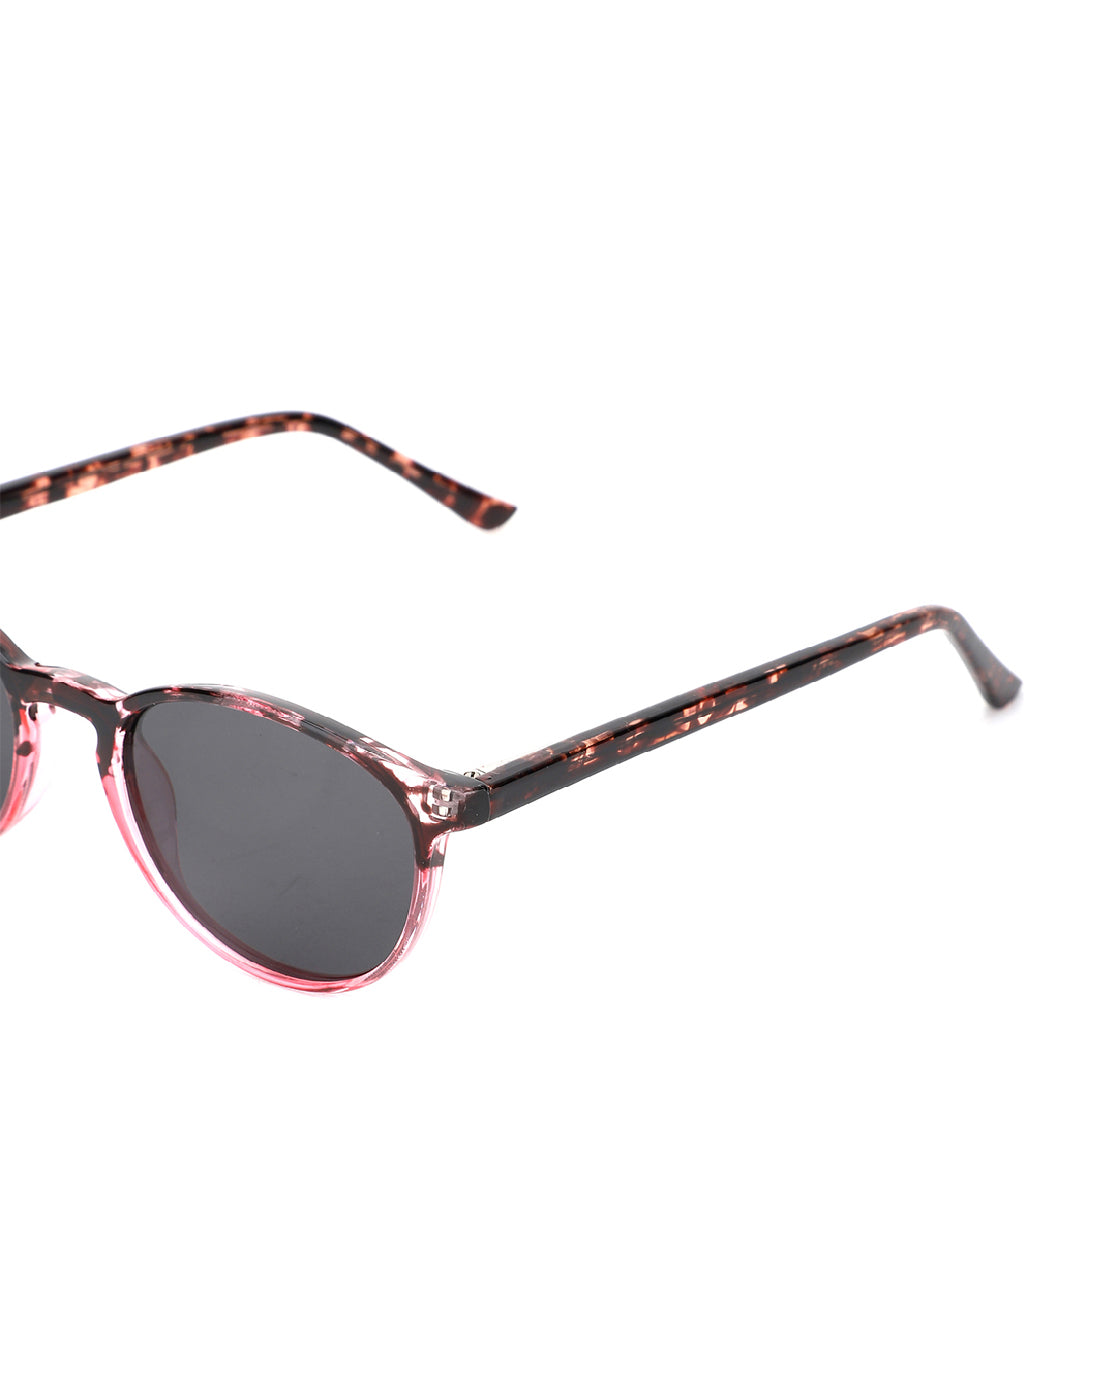 Buy Vans Sunglasses in Saudi, UAE, Kuwait and Qatar | VogaCloset